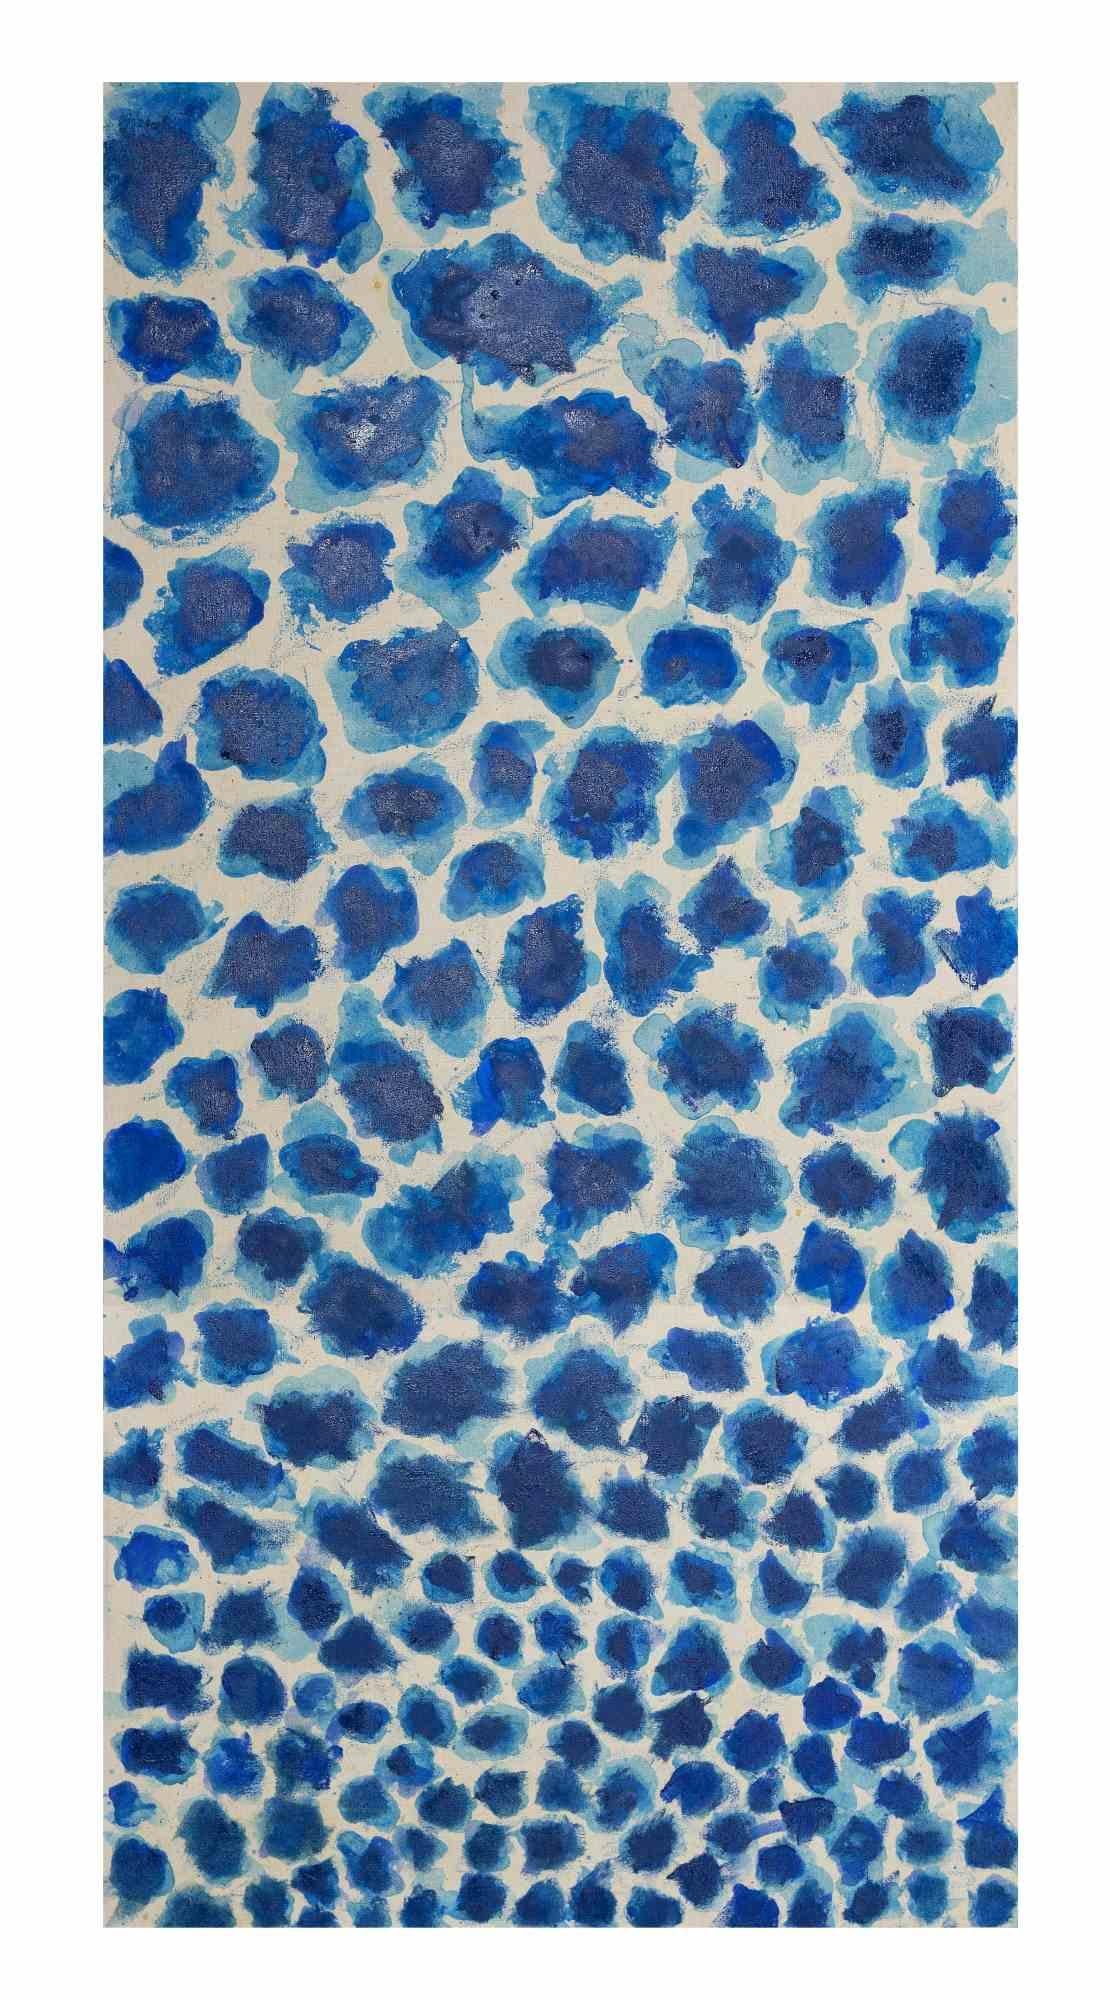 Blue Spots - Oil On Canvas by Giorgio Lo Fermo - 2021